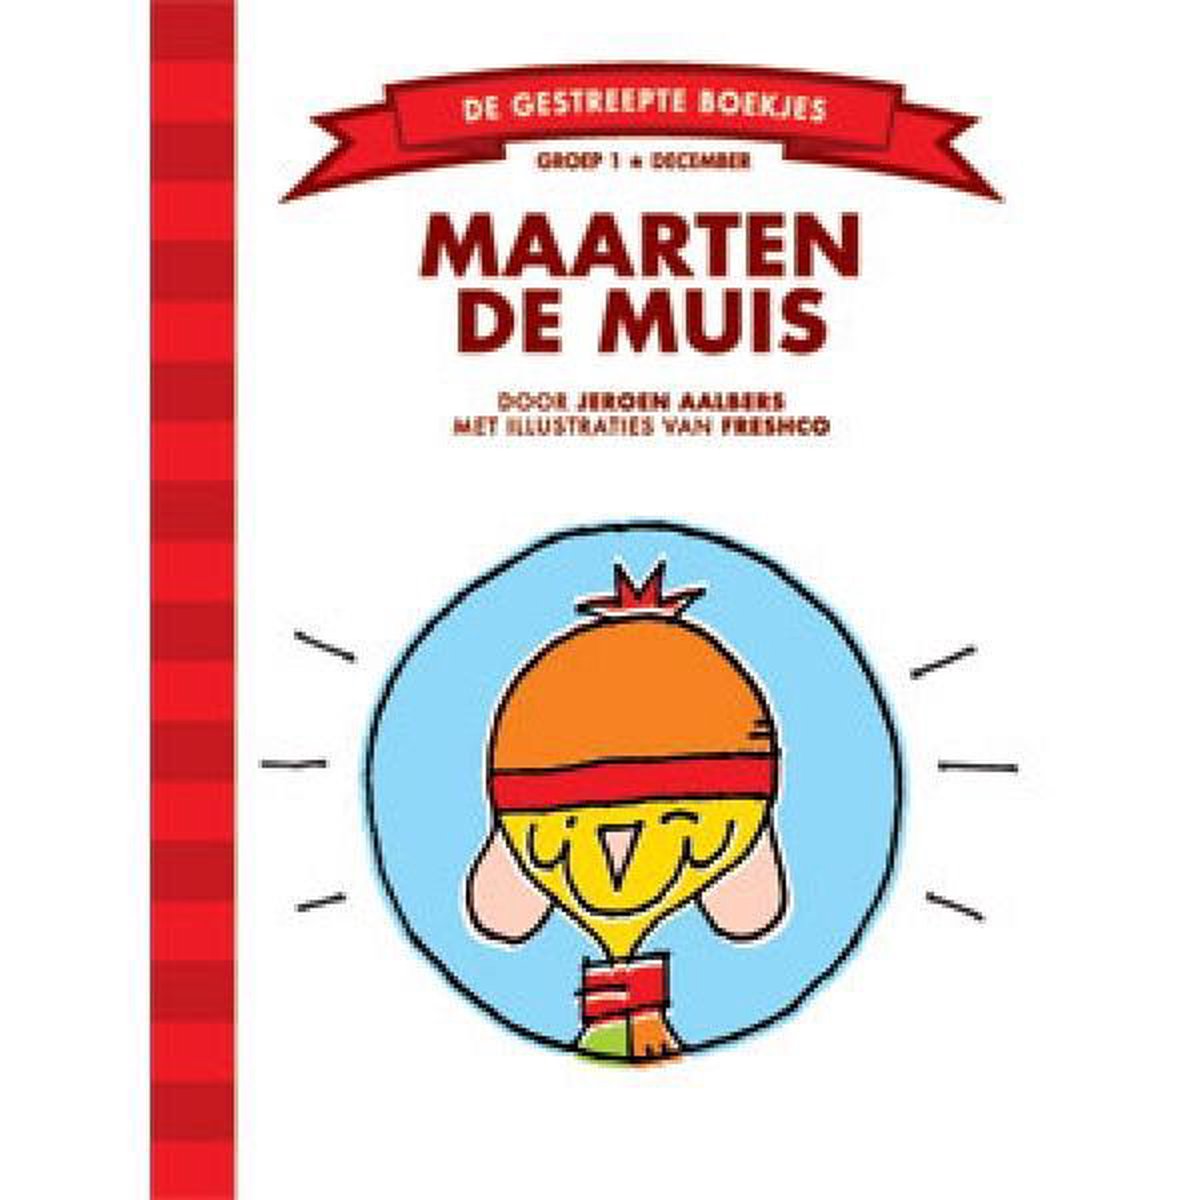 Maarten de muis / De Gestreepte Boekjes